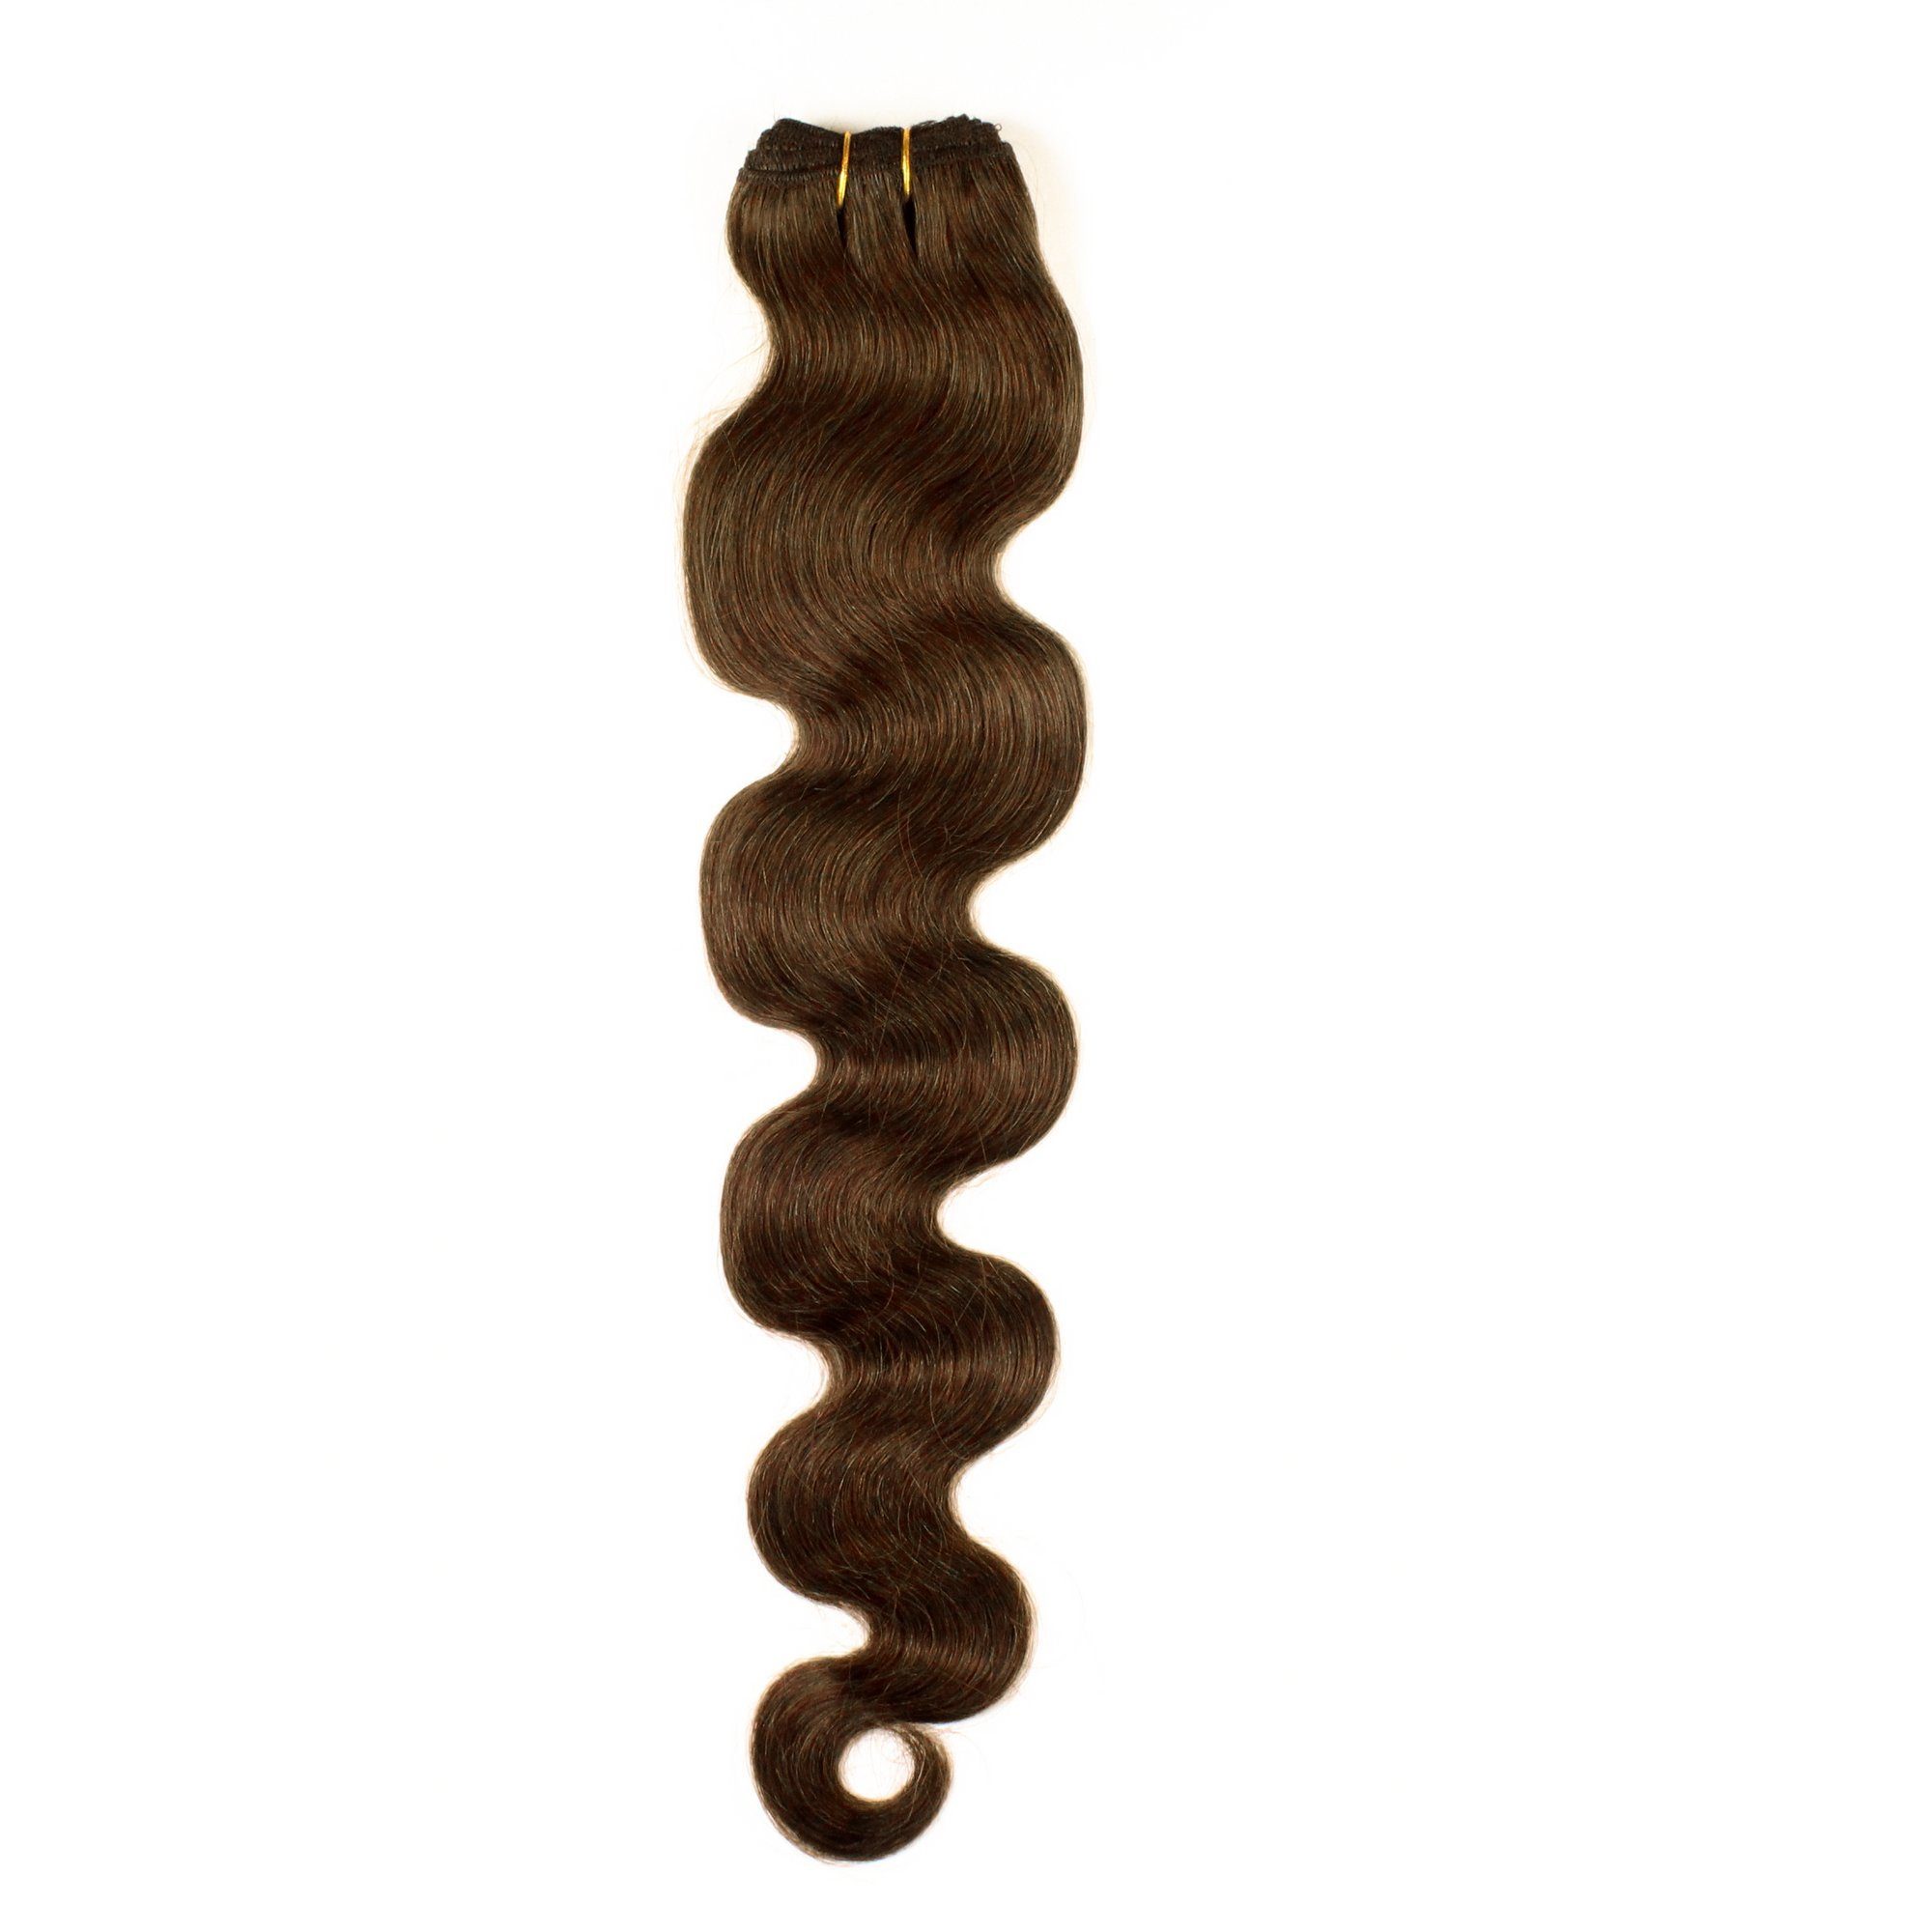 Echthaartresse hair2heart Gewellte Echthaar-Extension #6/3 Gold Dunkelblond 40cm